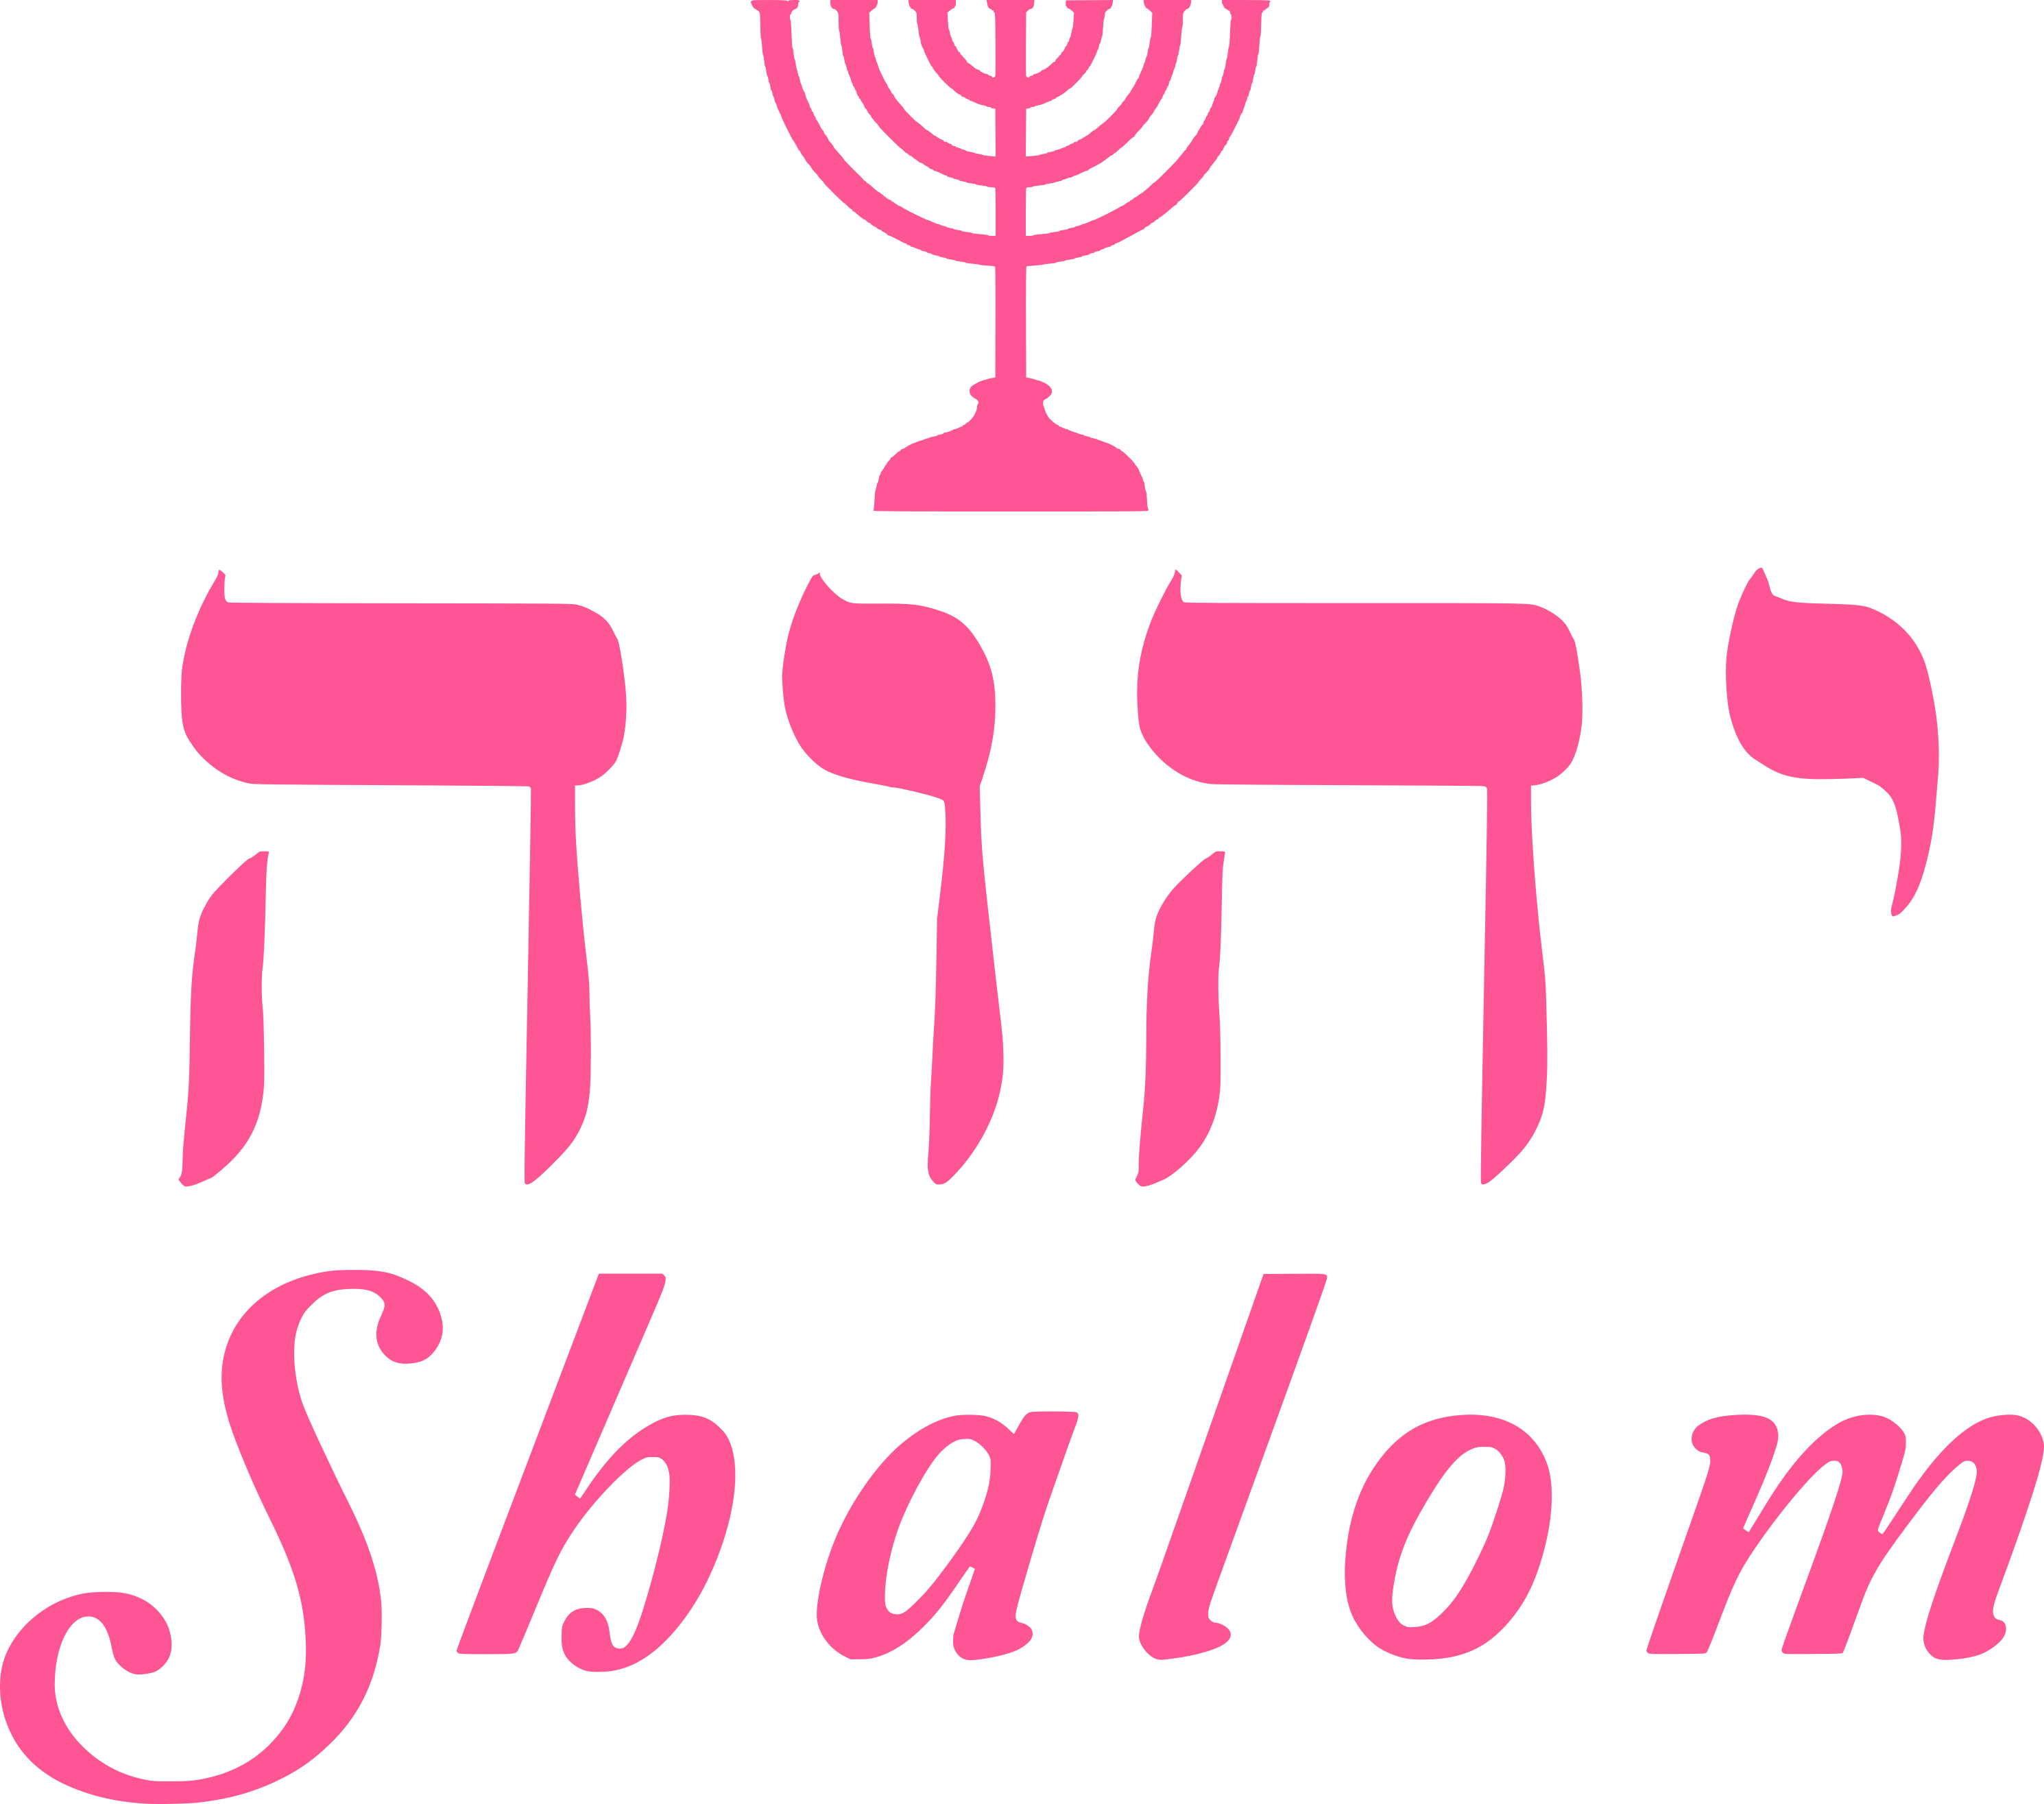 Yhvh Shalom Menorah Decal - Menorah (2981x2631)